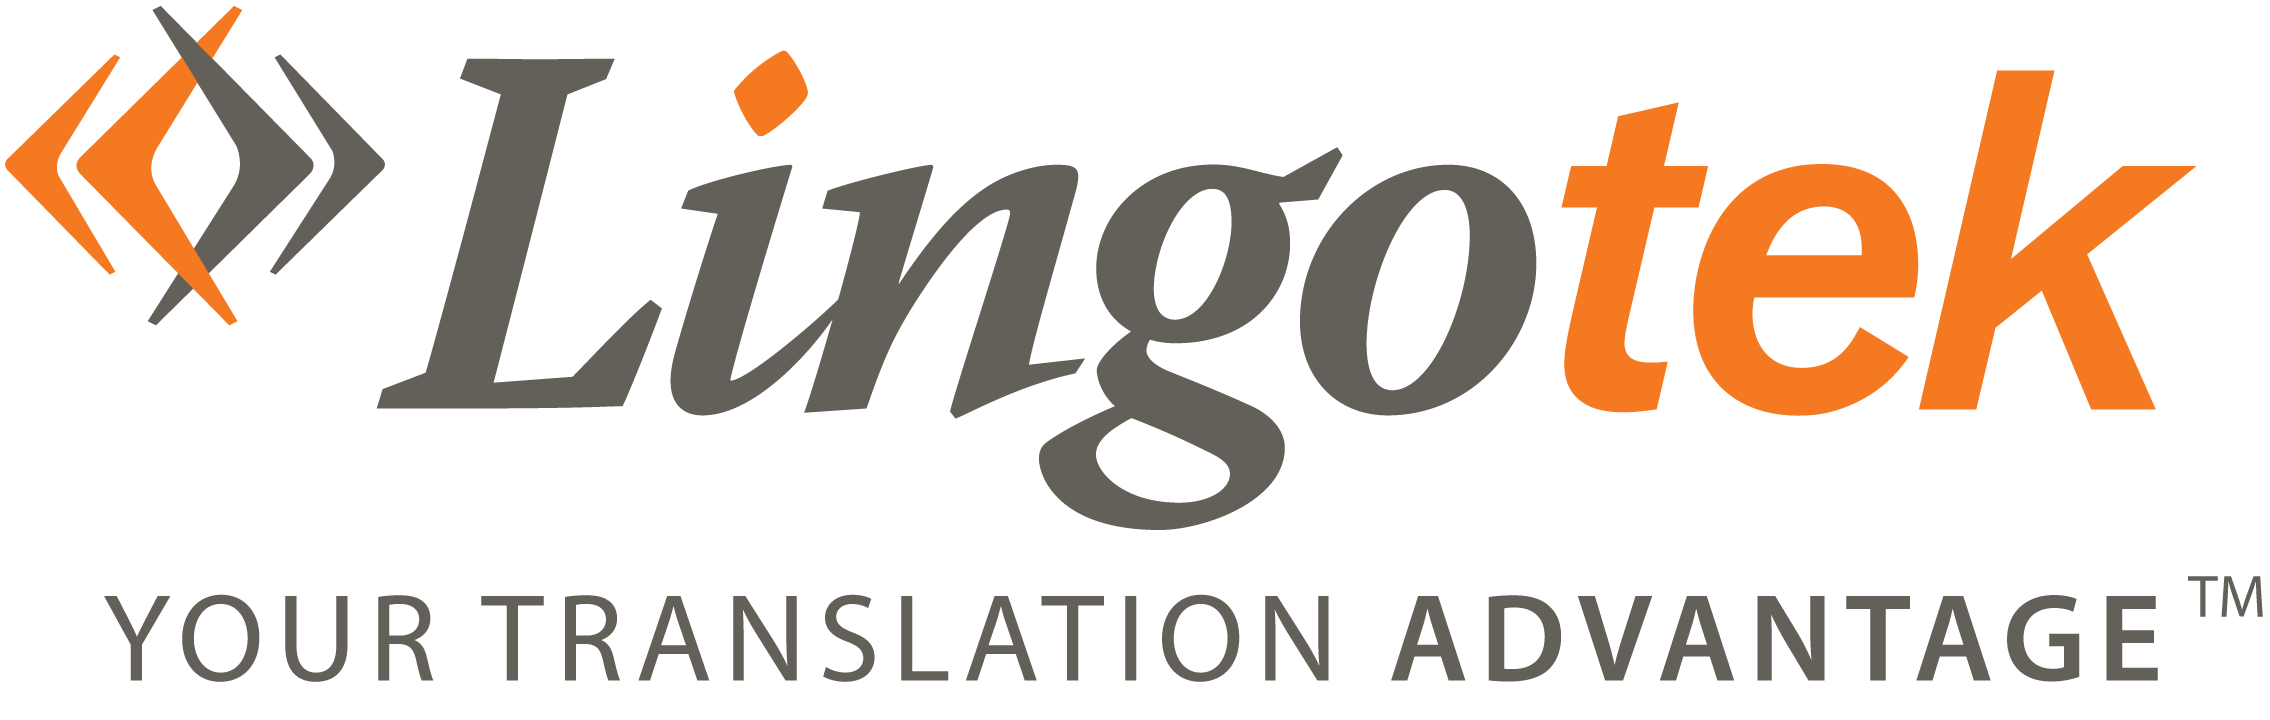 Lingotek 2020 logo-tag-2270x720